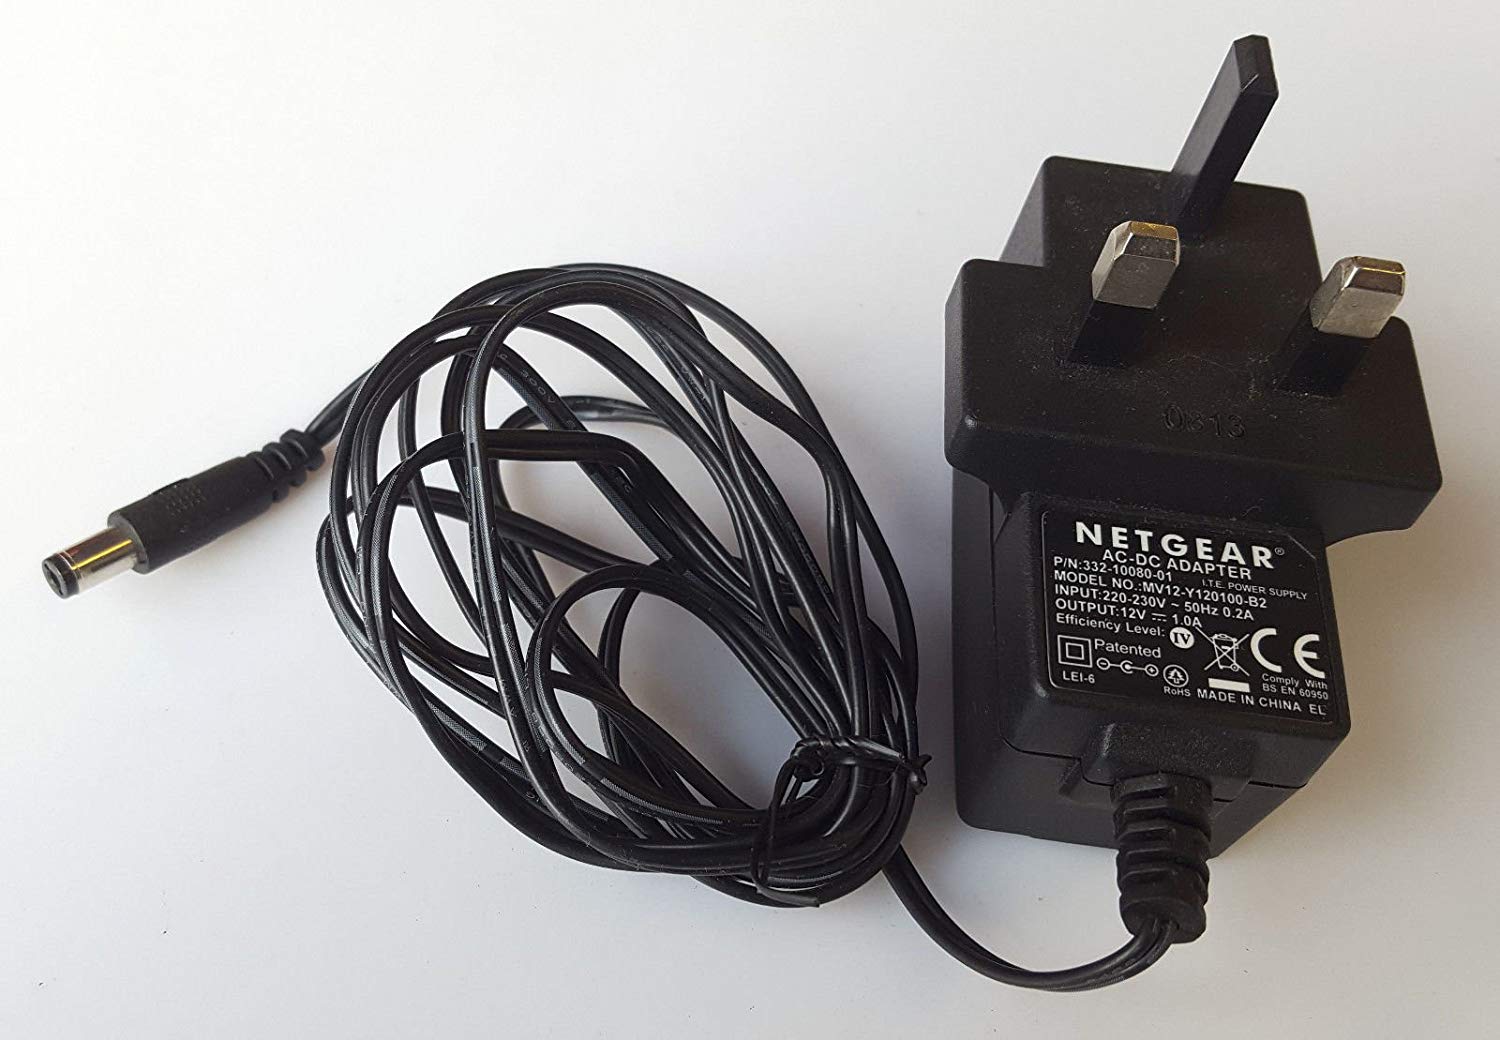 NEW Netgear 12W 12V 1A 332-10080-01 MV12-Y120100-B12 3 Pin UK Plug AC Power Adapter